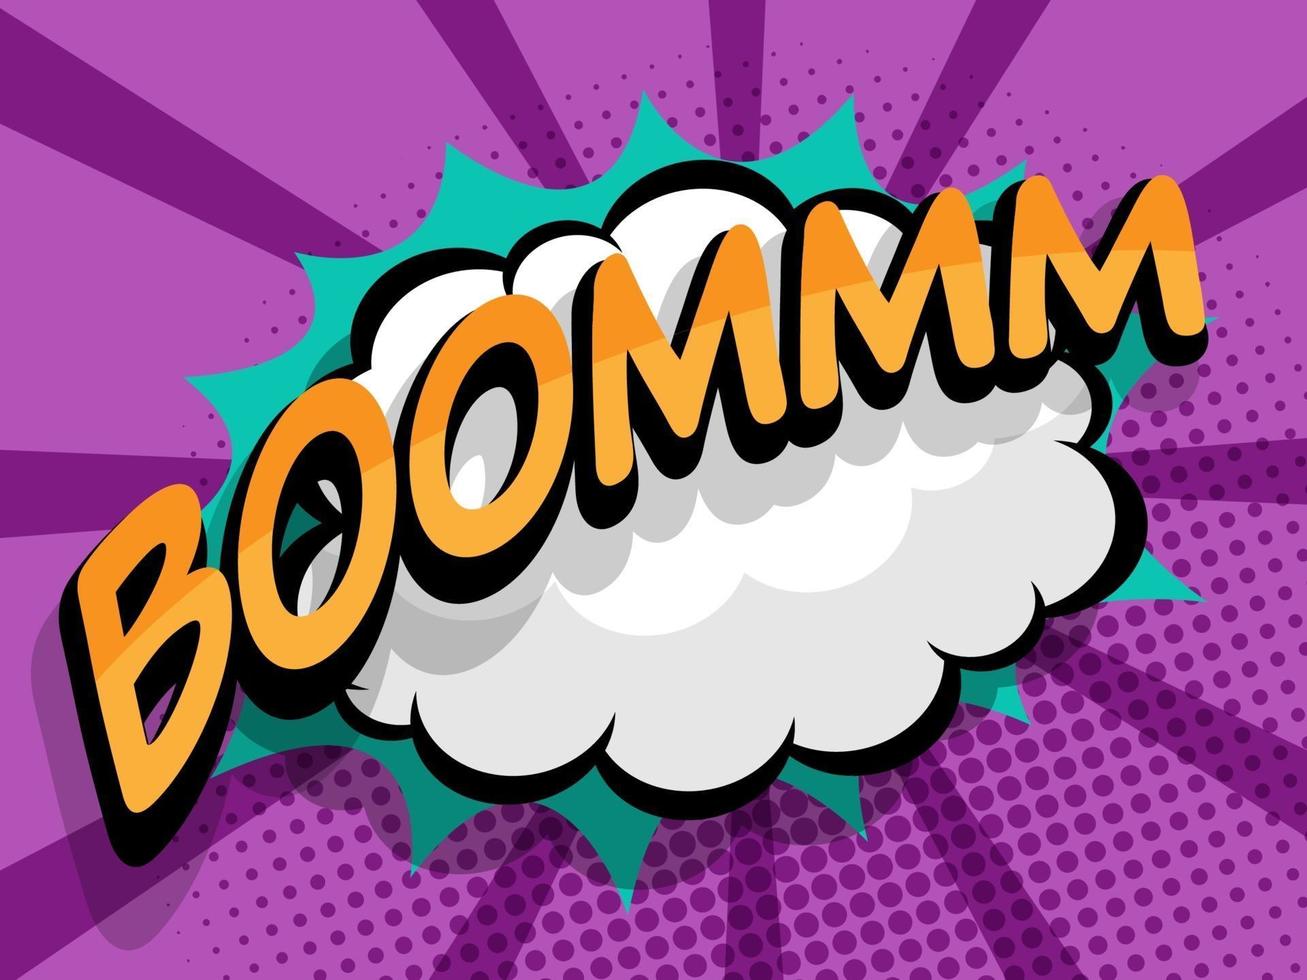 boom comic pop art background vector